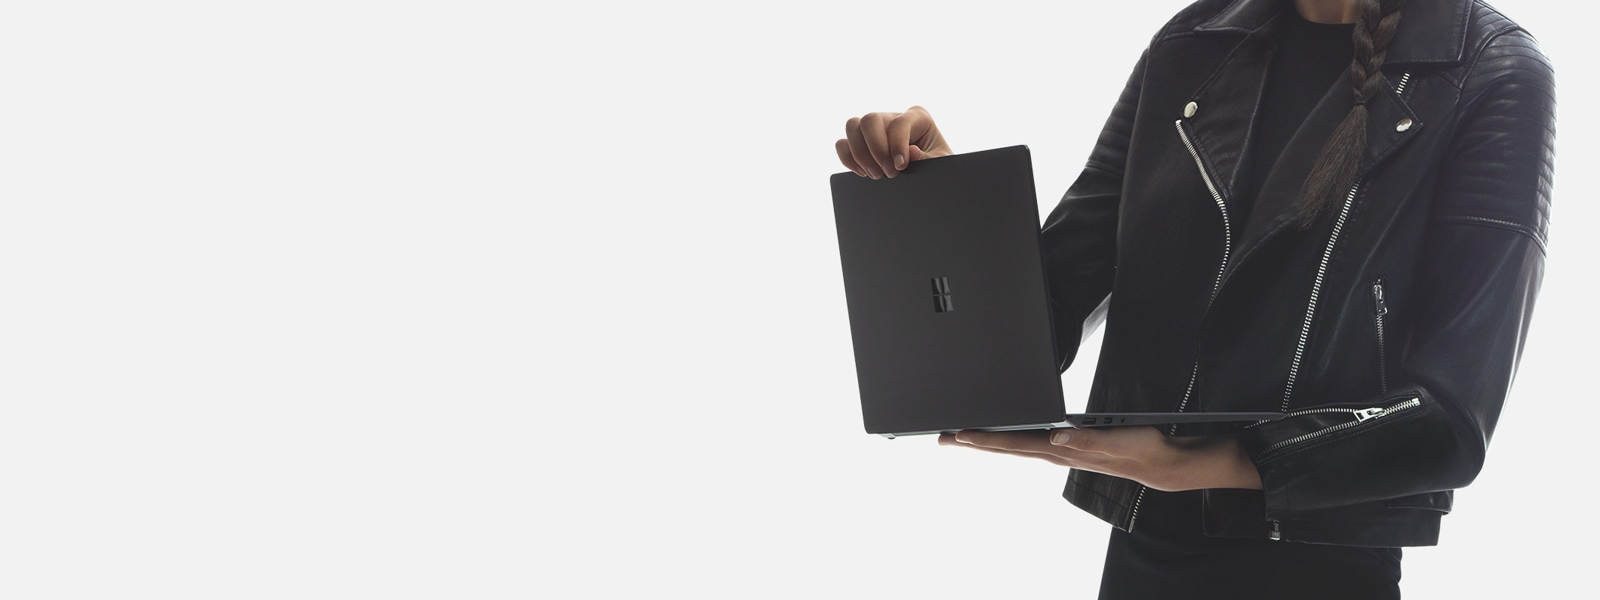 Eine Frau hält einen Surface Laptop 2